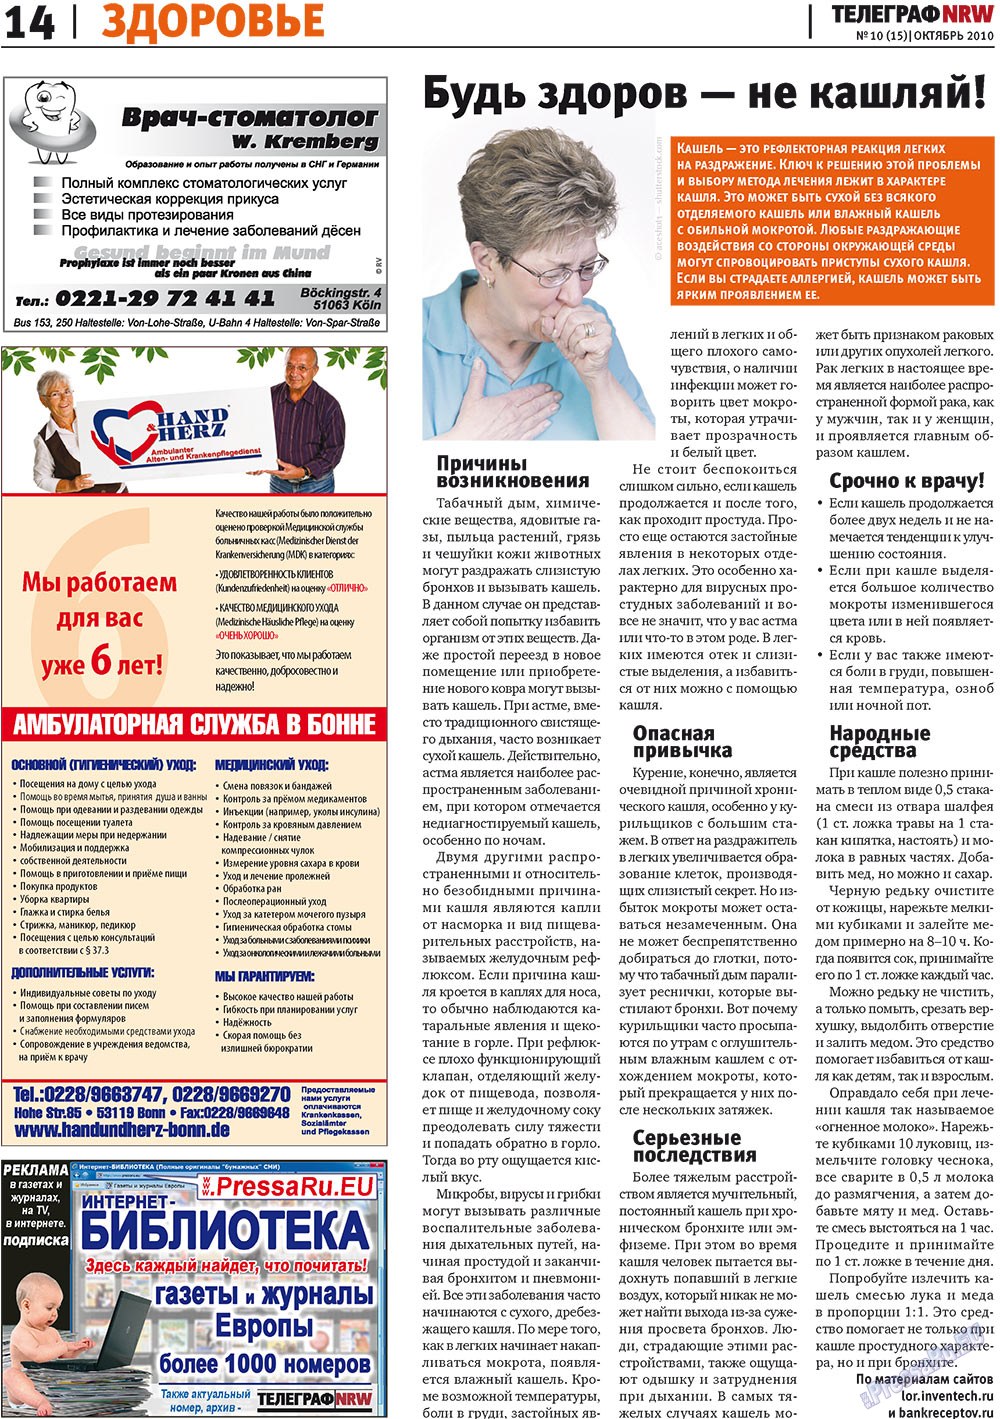 Телеграф NRW (газета). 2010 год, номер 10, стр. 14